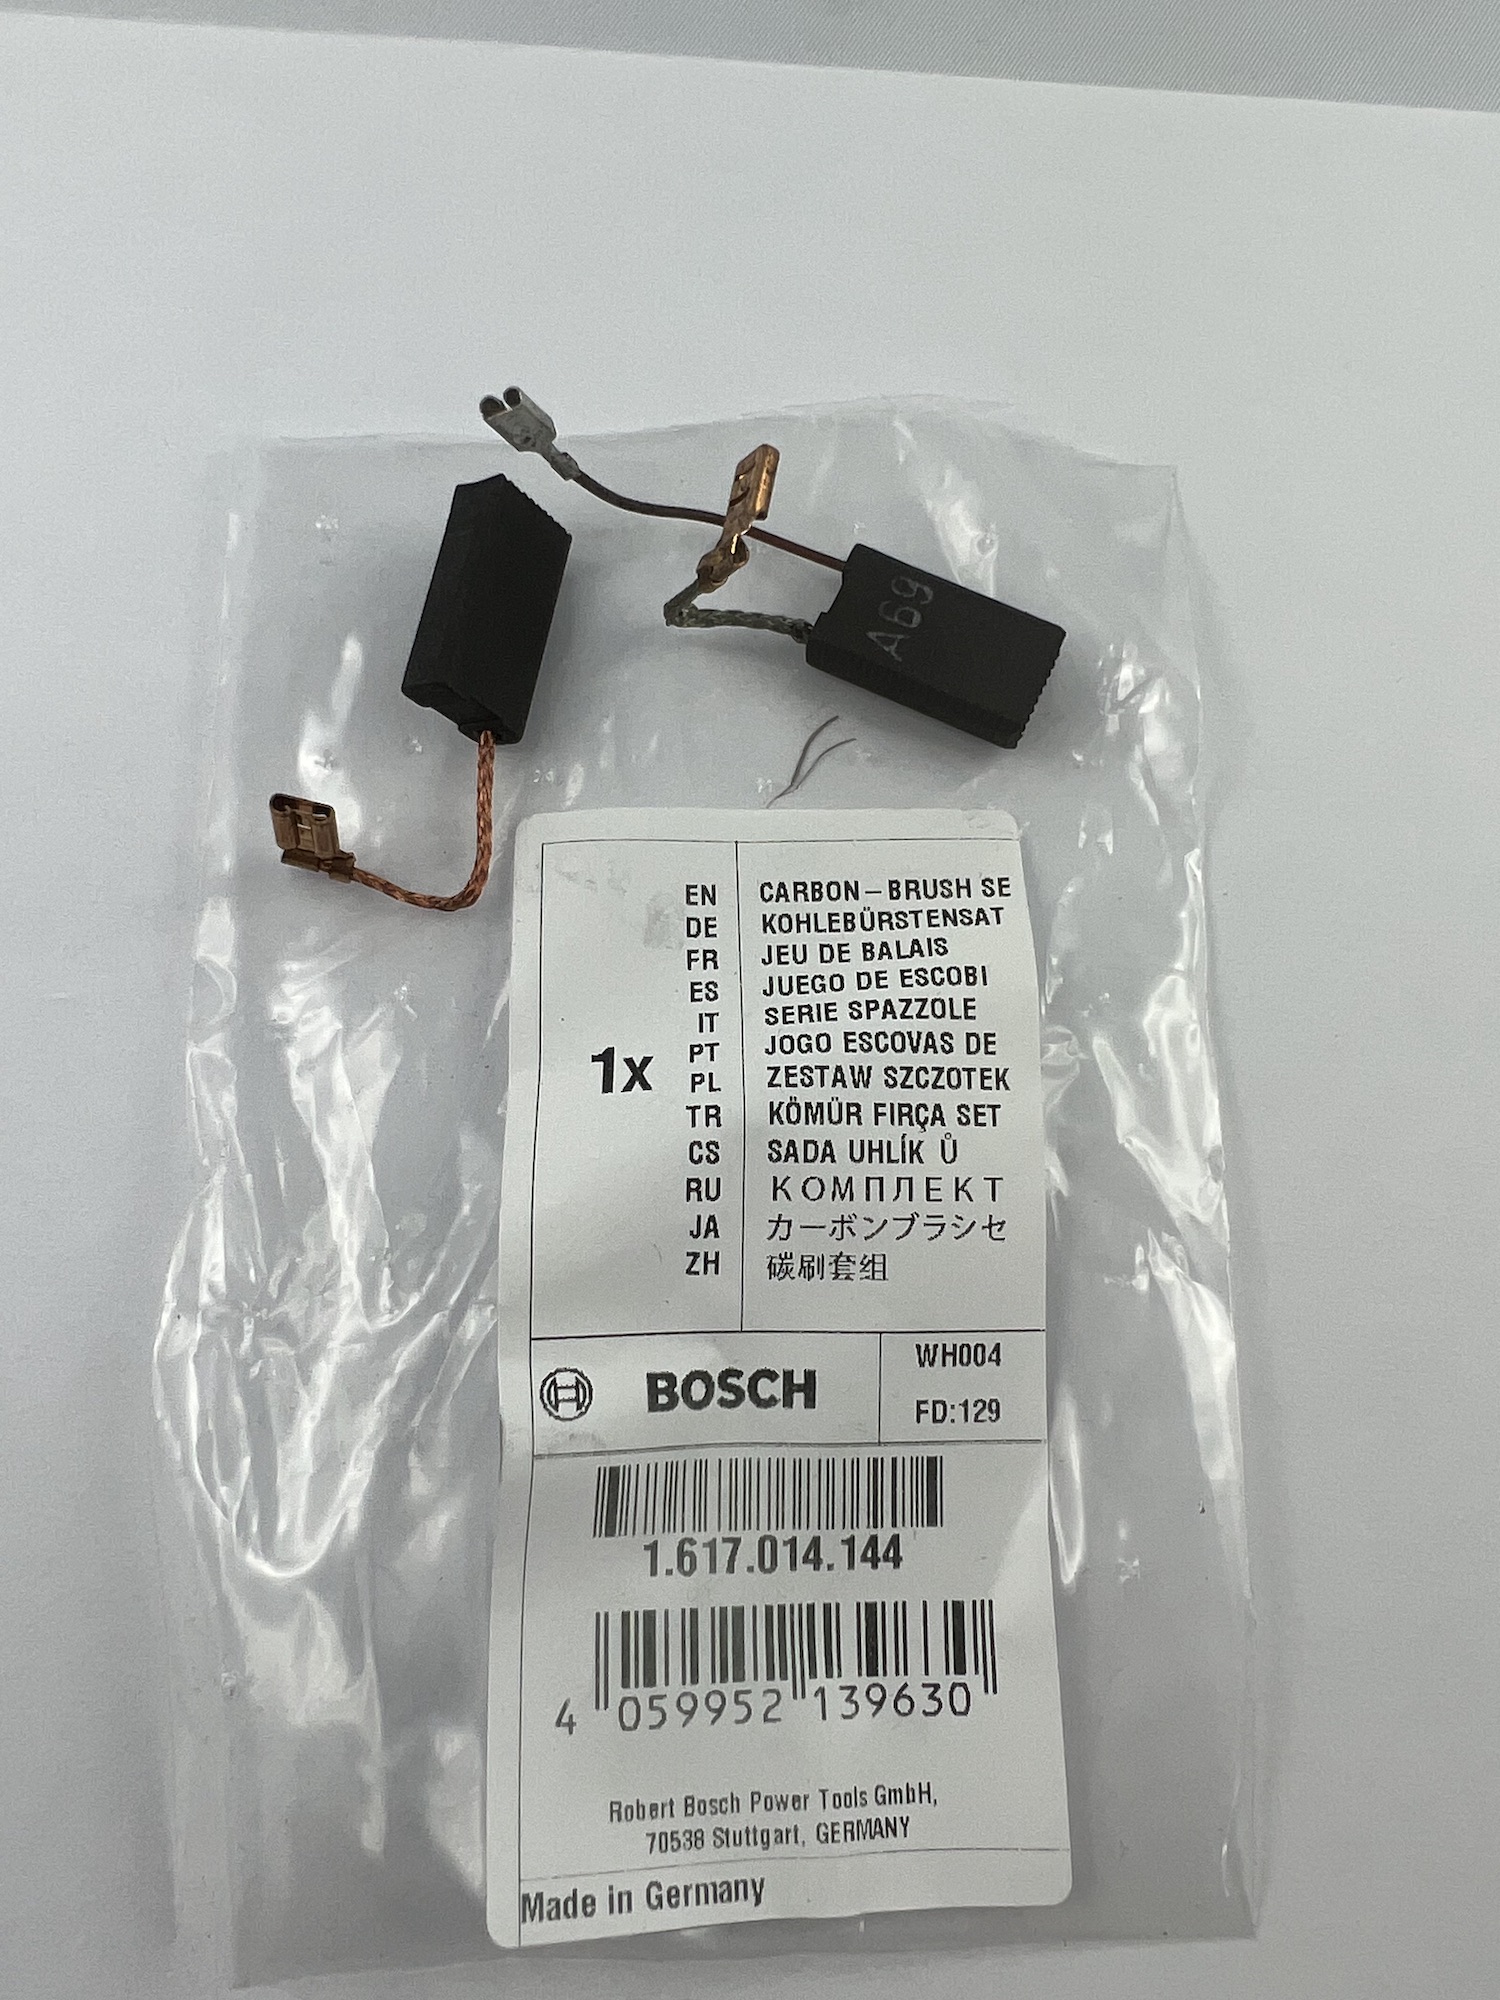 2x Kohlebürsten 6,3x12,5mm für Bosch 1617014144 GBH 5-40 DE, GBH 5-40 DCE